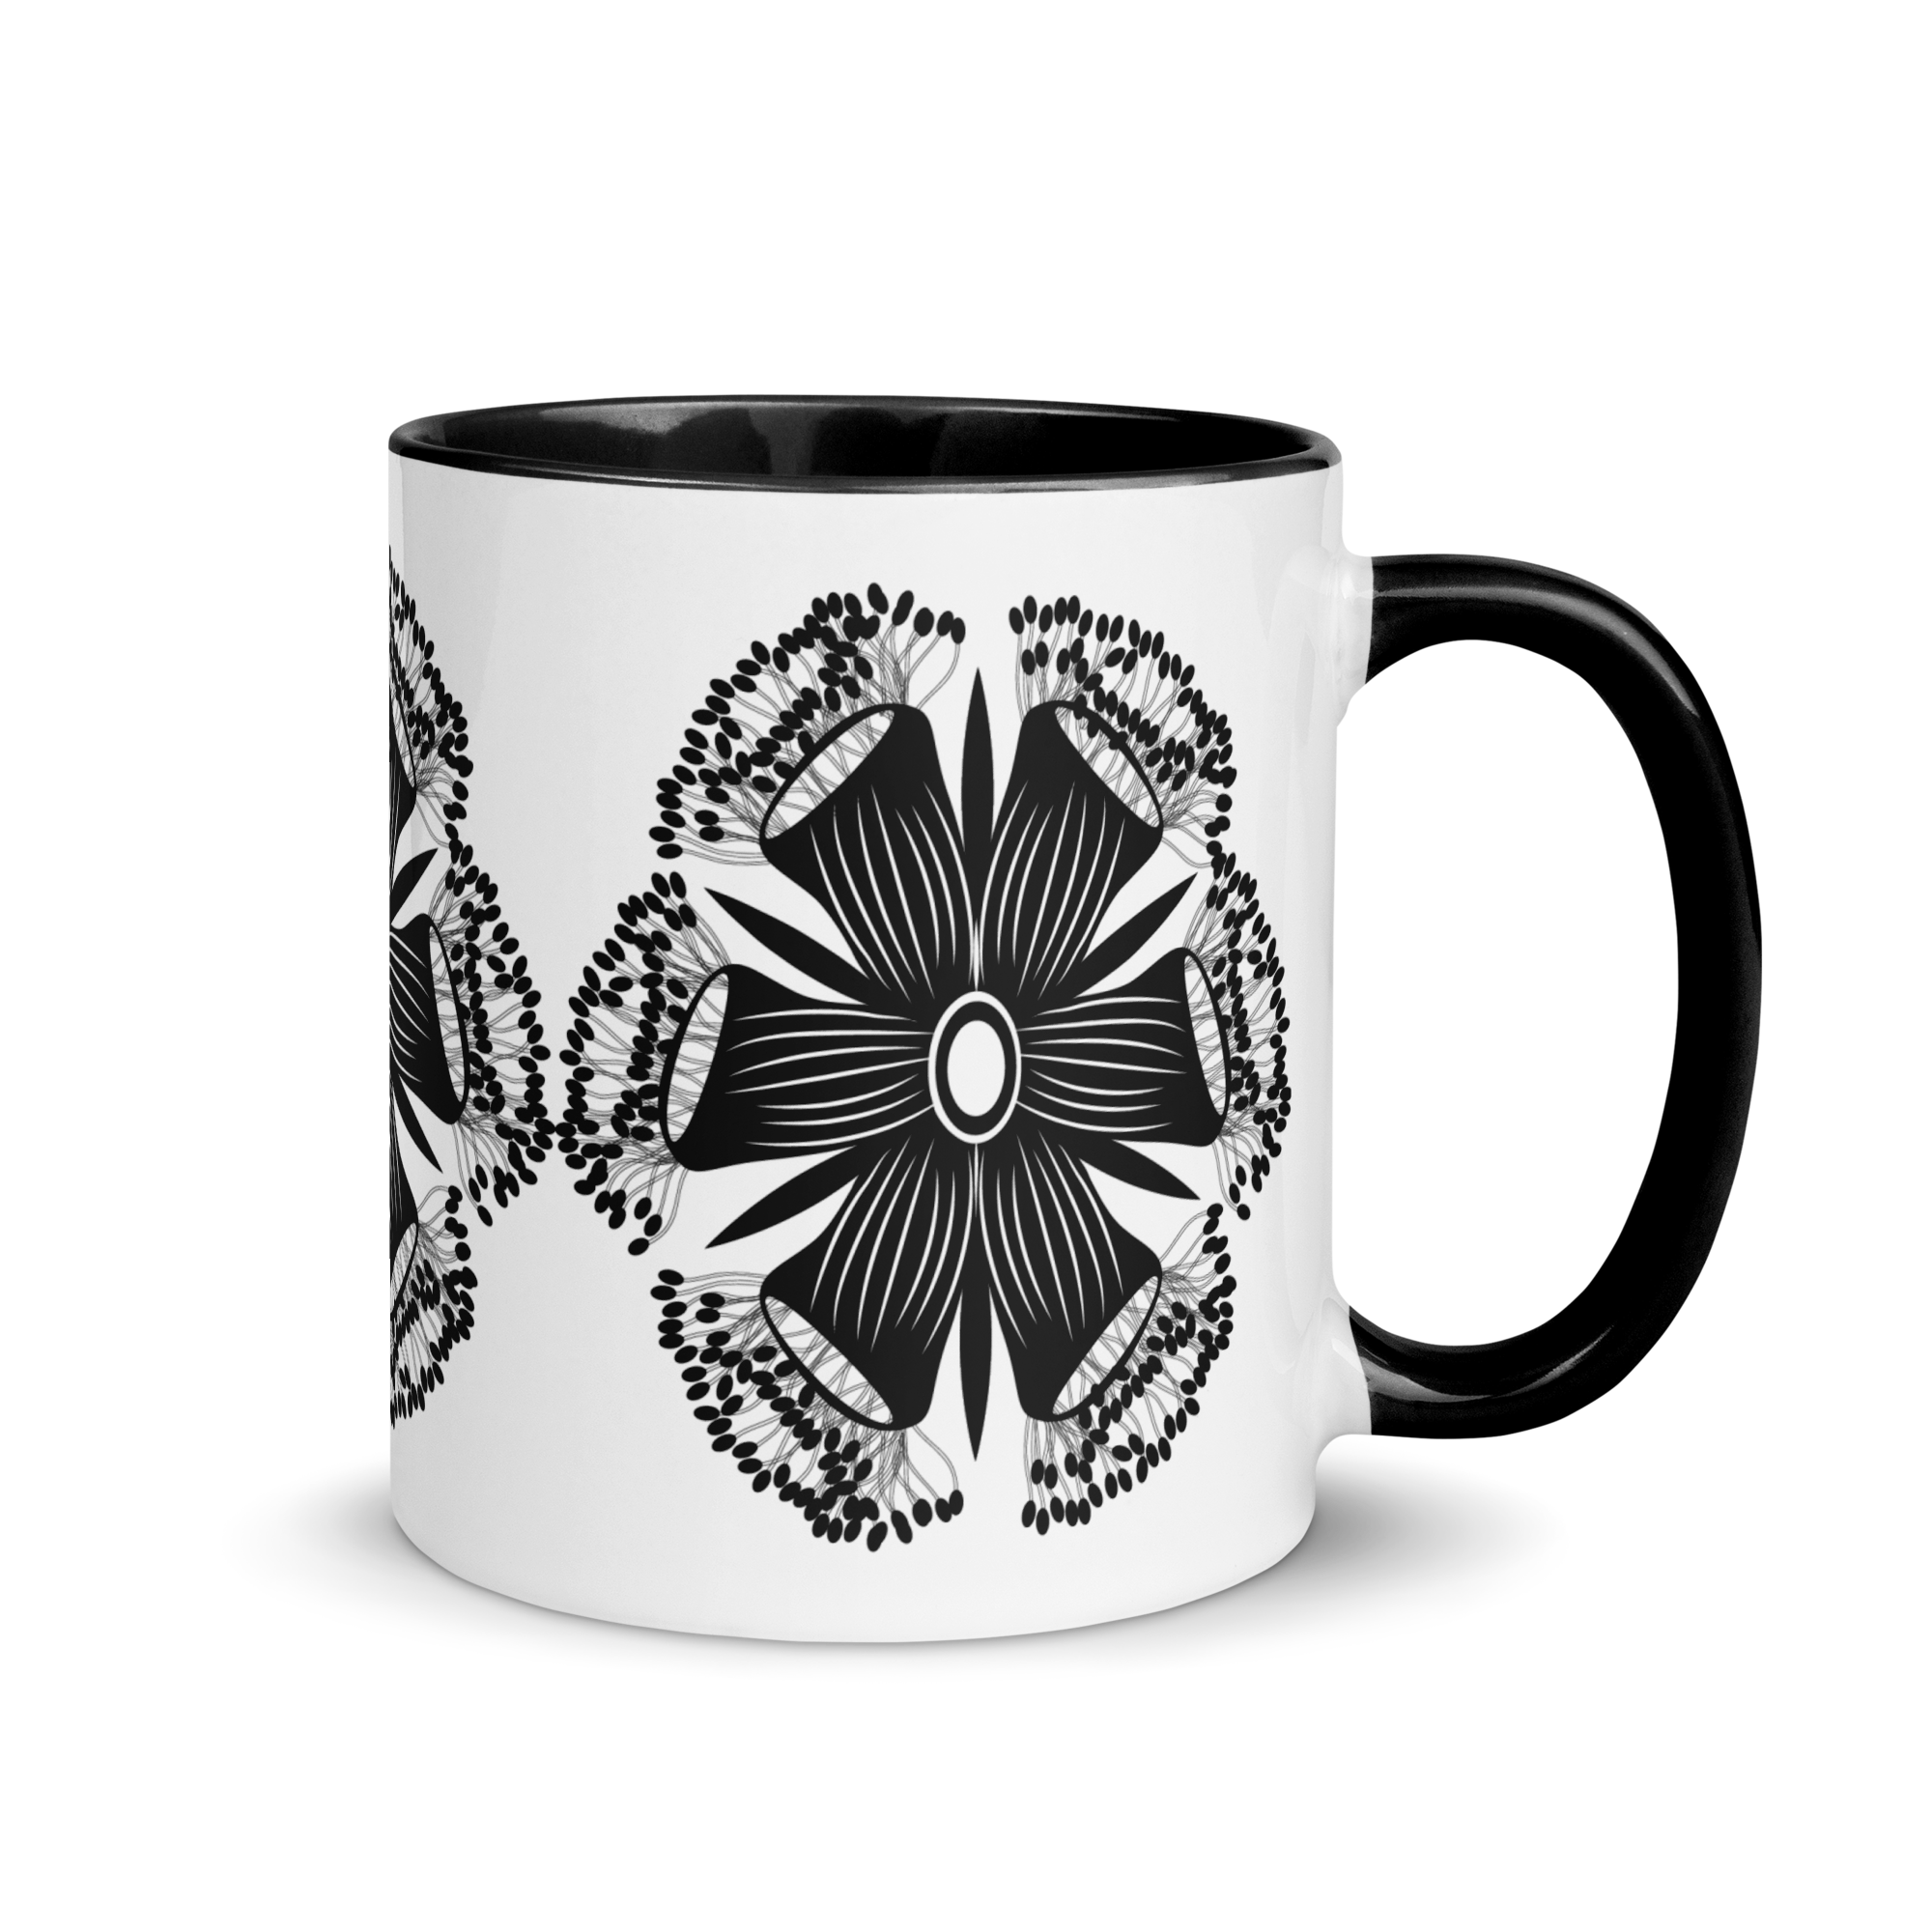 white-ceramic-mug-with-color-inside-black-11-oz-right-65e46d588ccf8.png